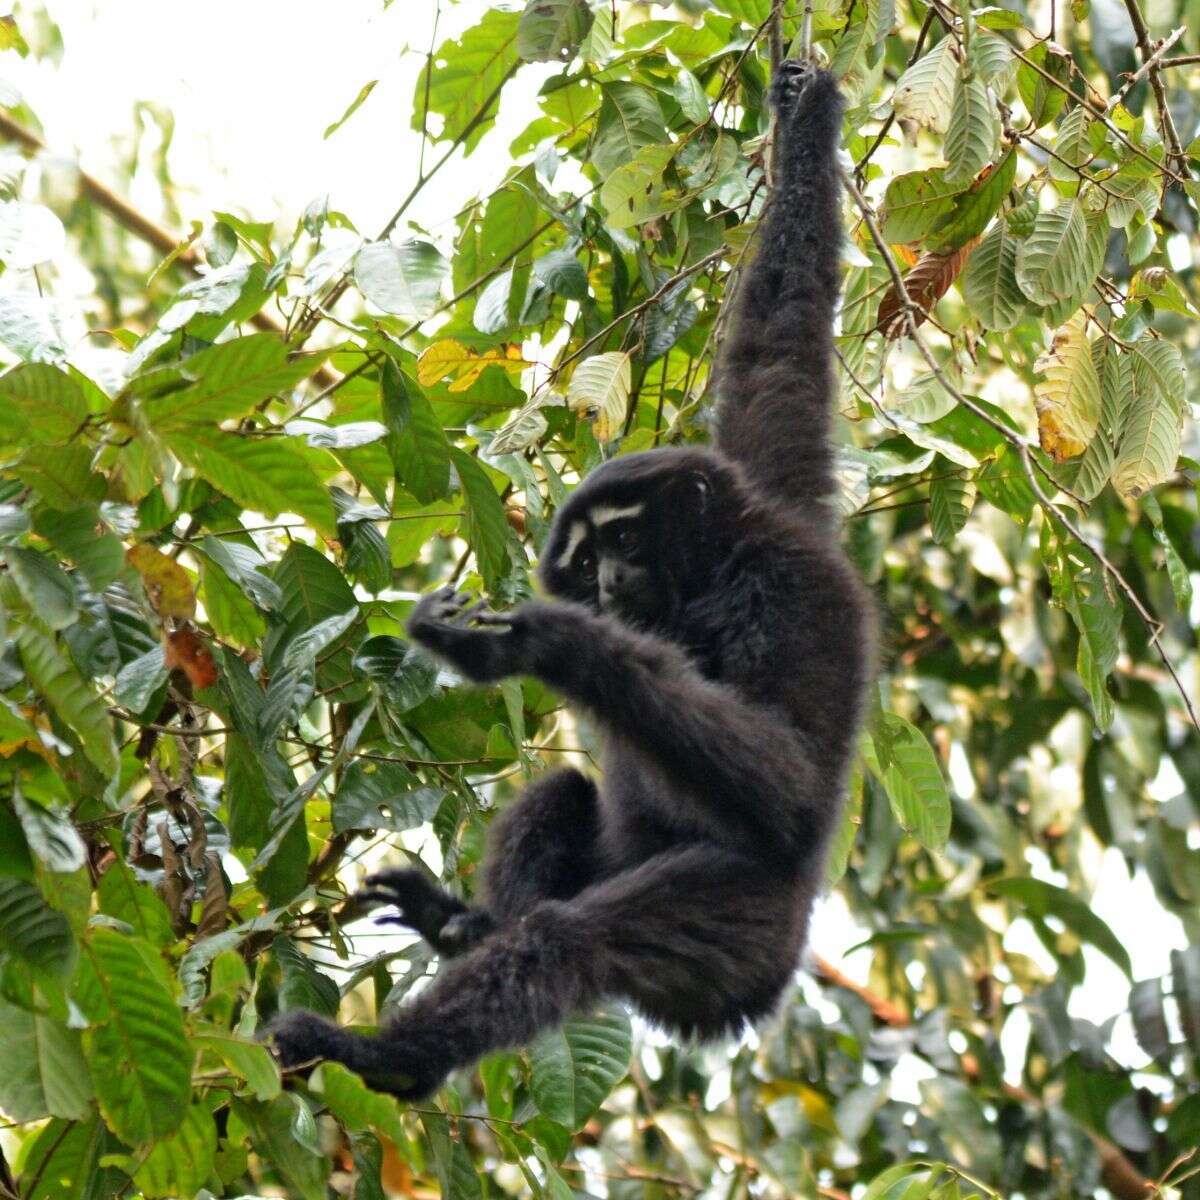 Image of Hoolock Gibbon